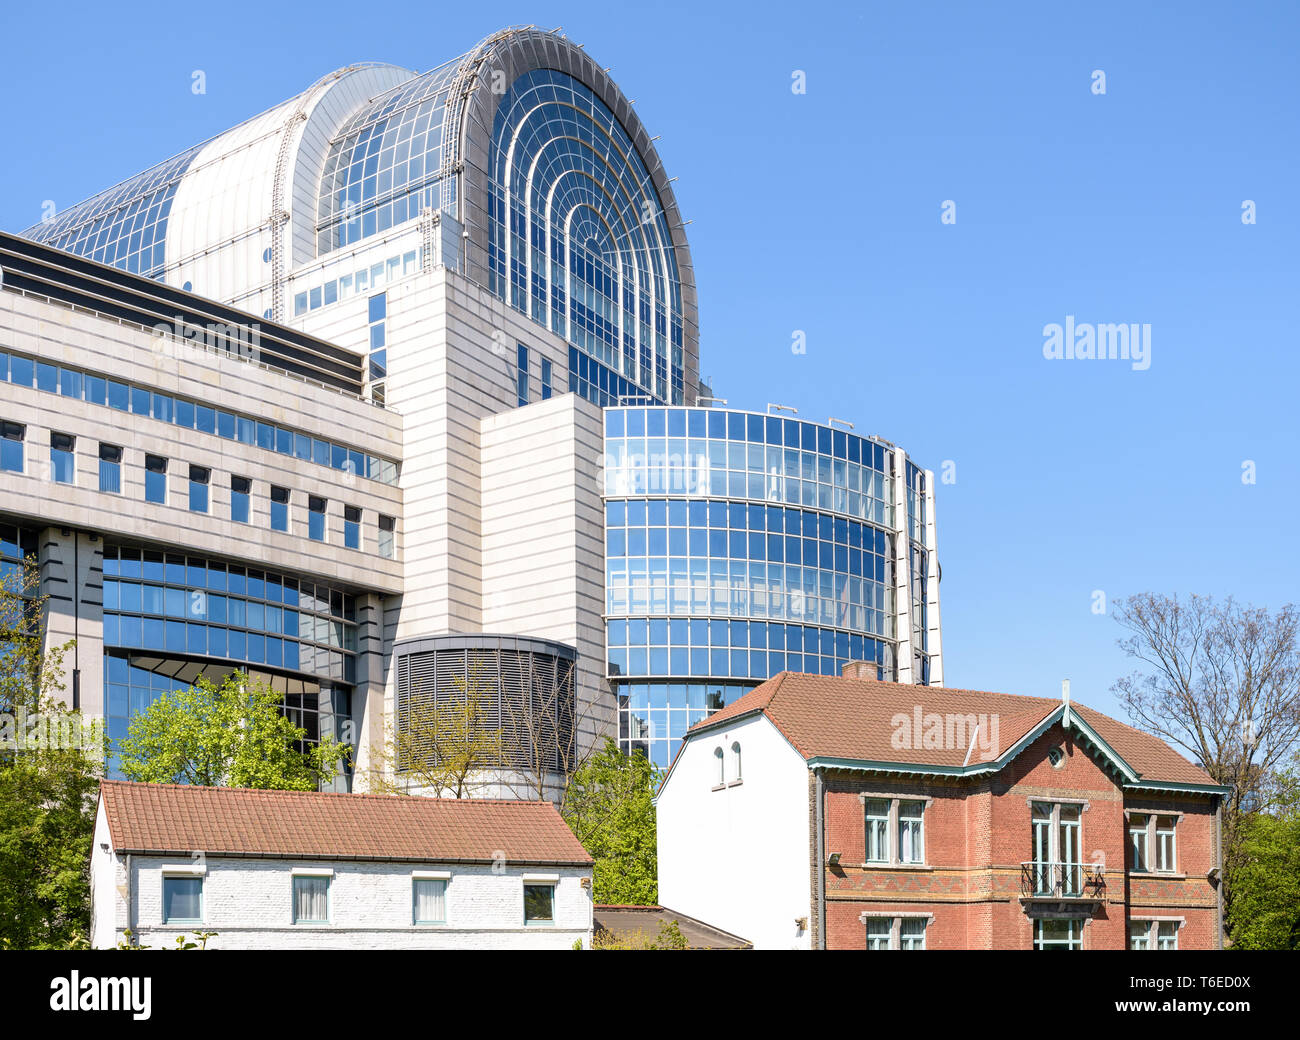 Le bâtiment Paul-Henri Spaak, siège du Parlement européen à Bruxelles, Belgique, donnant sur la chambre de Jean Jules Linden dans le parc Léopold. Banque D'Images